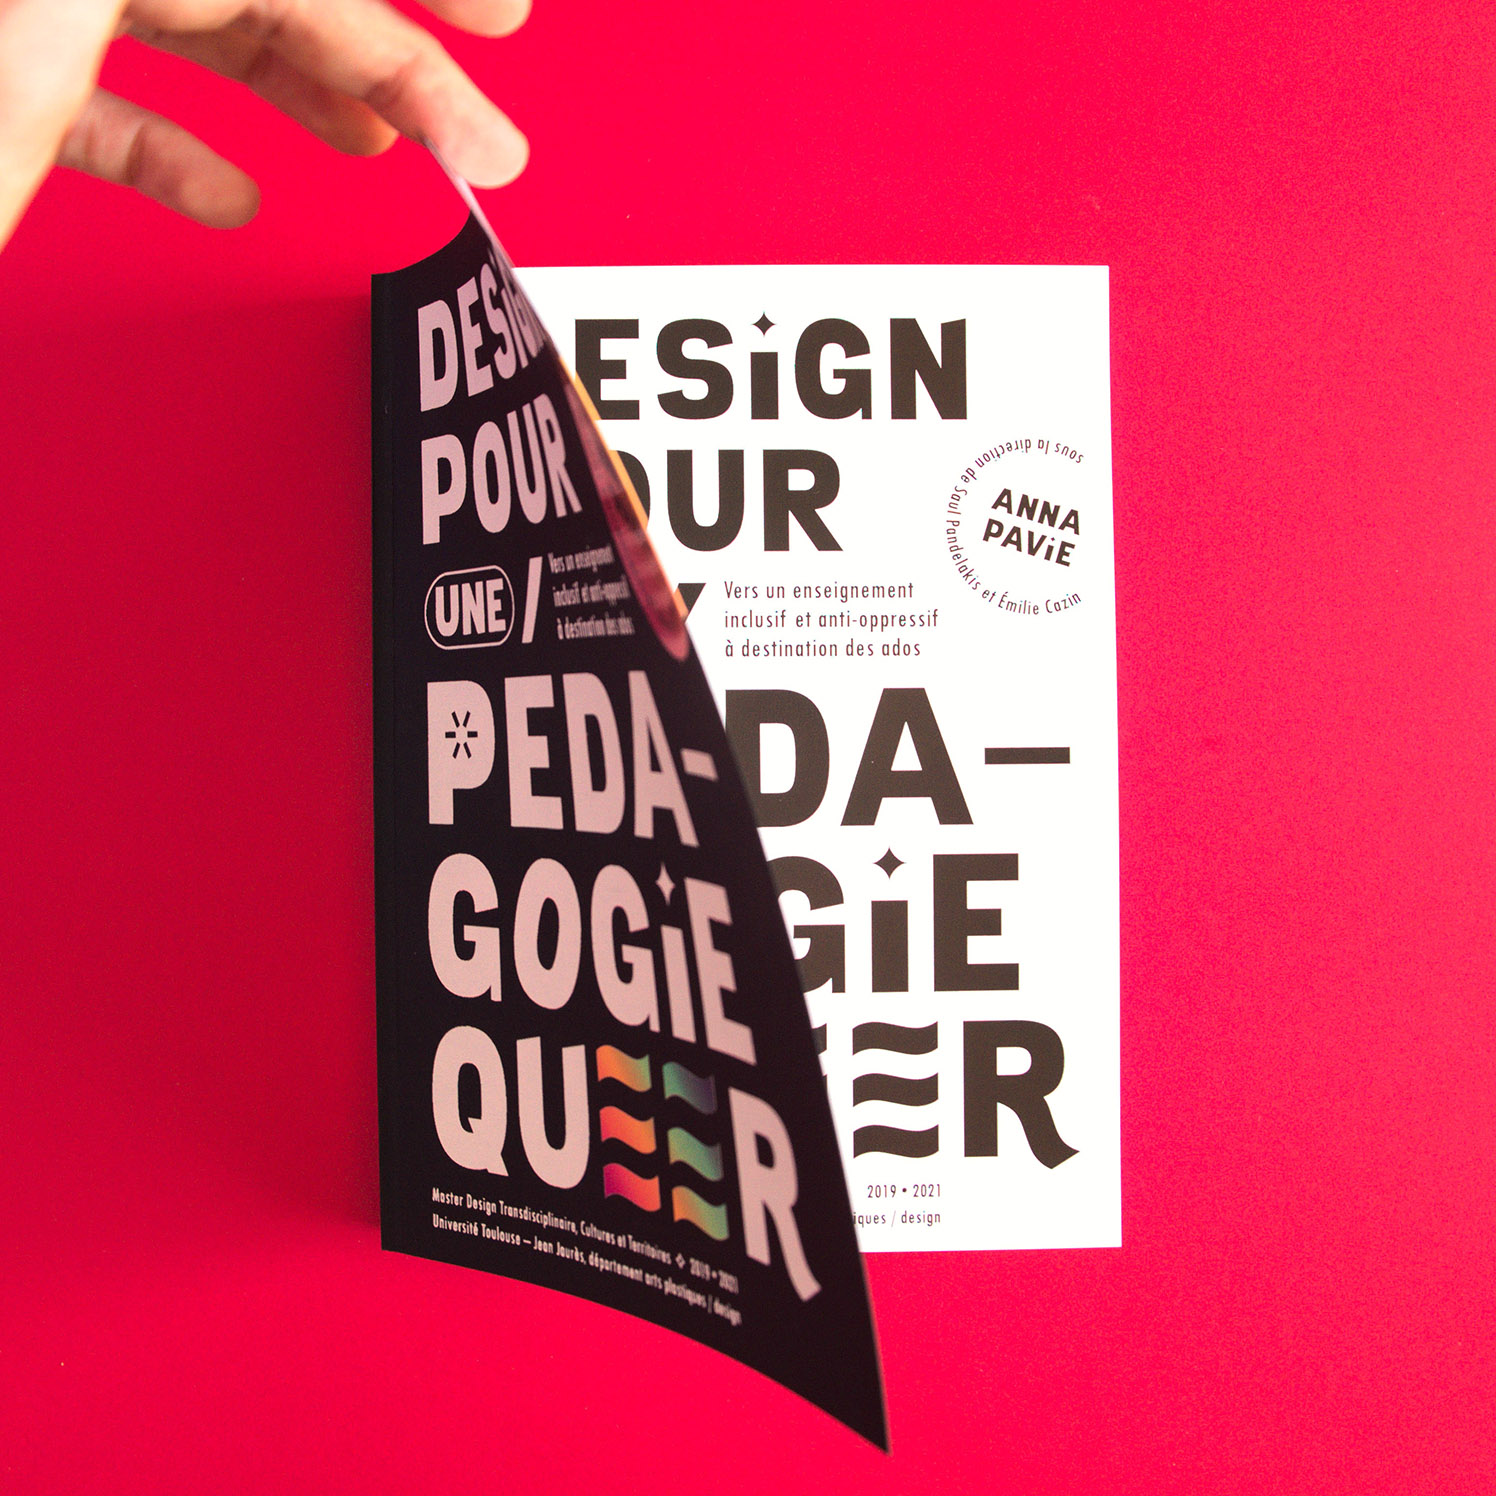 Mémoire Design pour une pédagogie queer (Anna Pavie) : ouverture de l'ouvrage